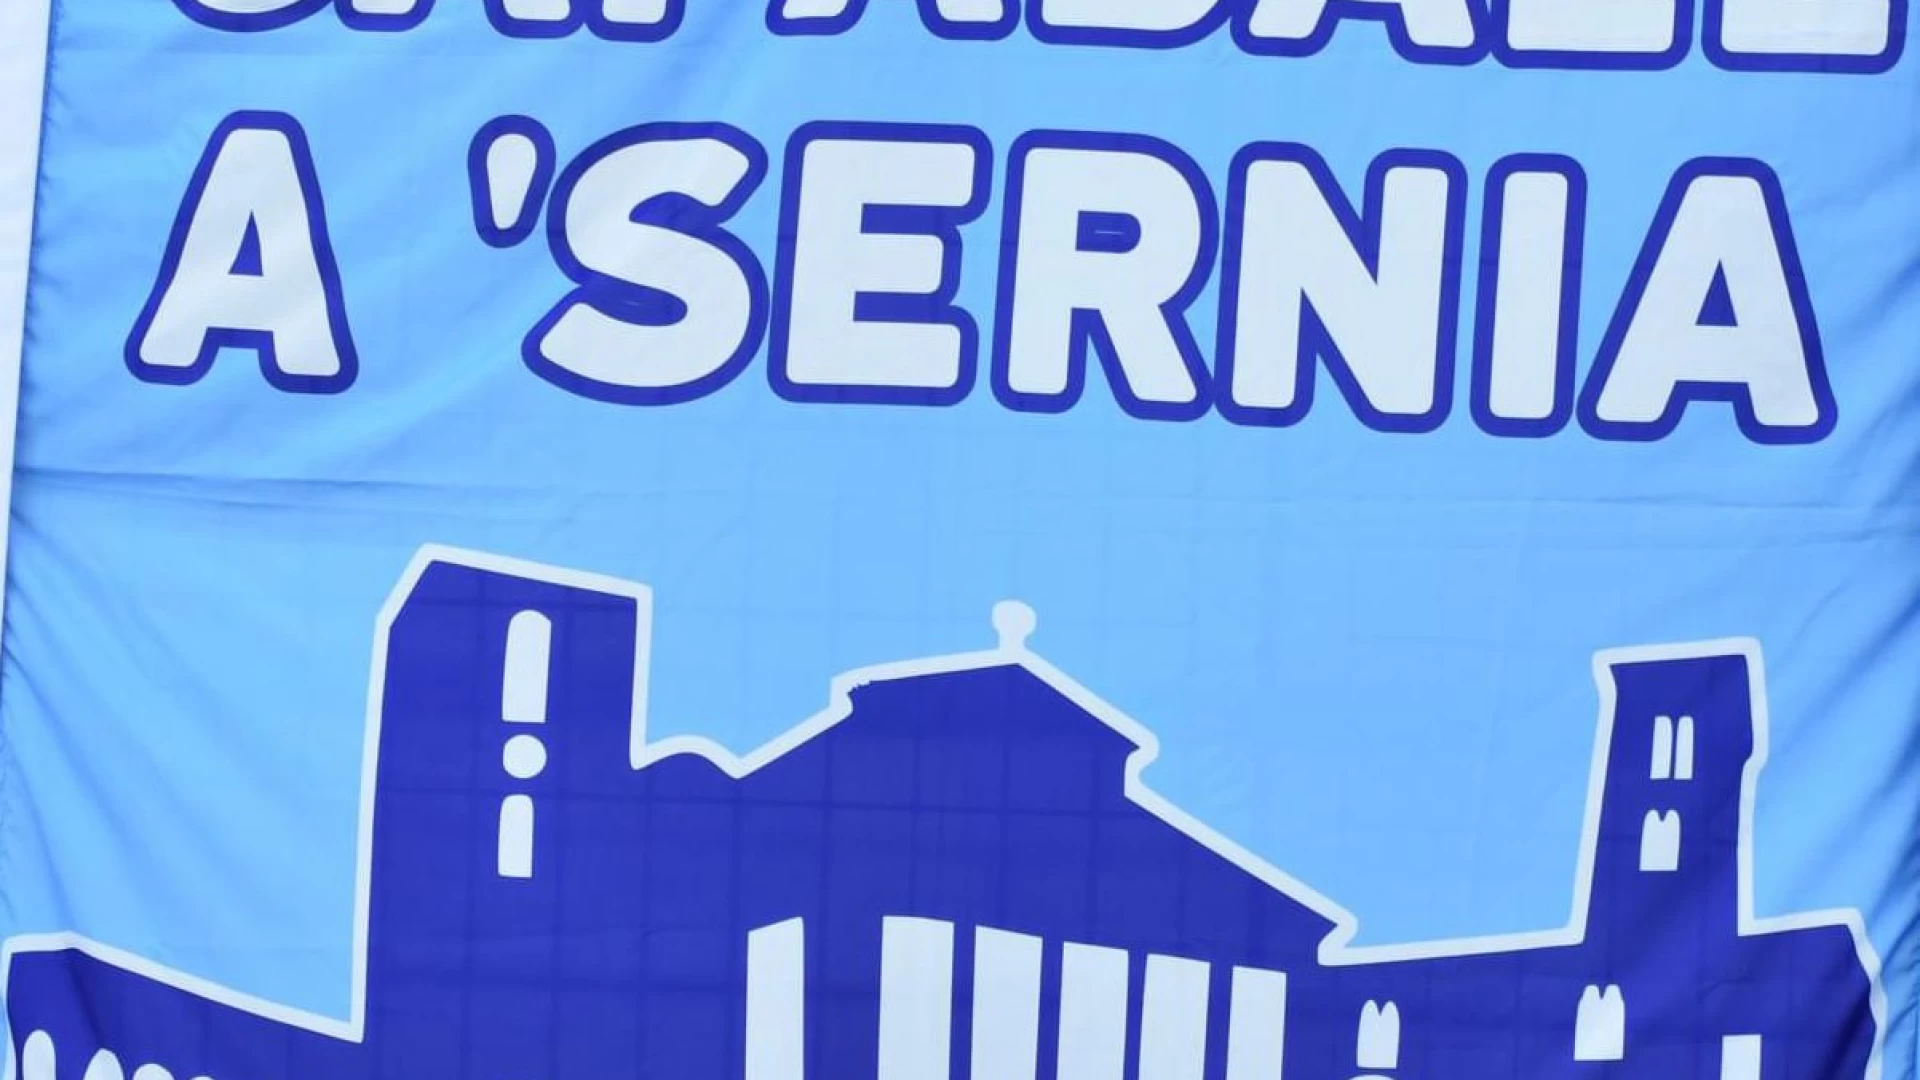 Isernia: gli esponenti del gruppo di tifosi “Capaball A Sernia”, doneranno all’ospedale cittadino uova di Pasqua e apparecchiature mediche”.